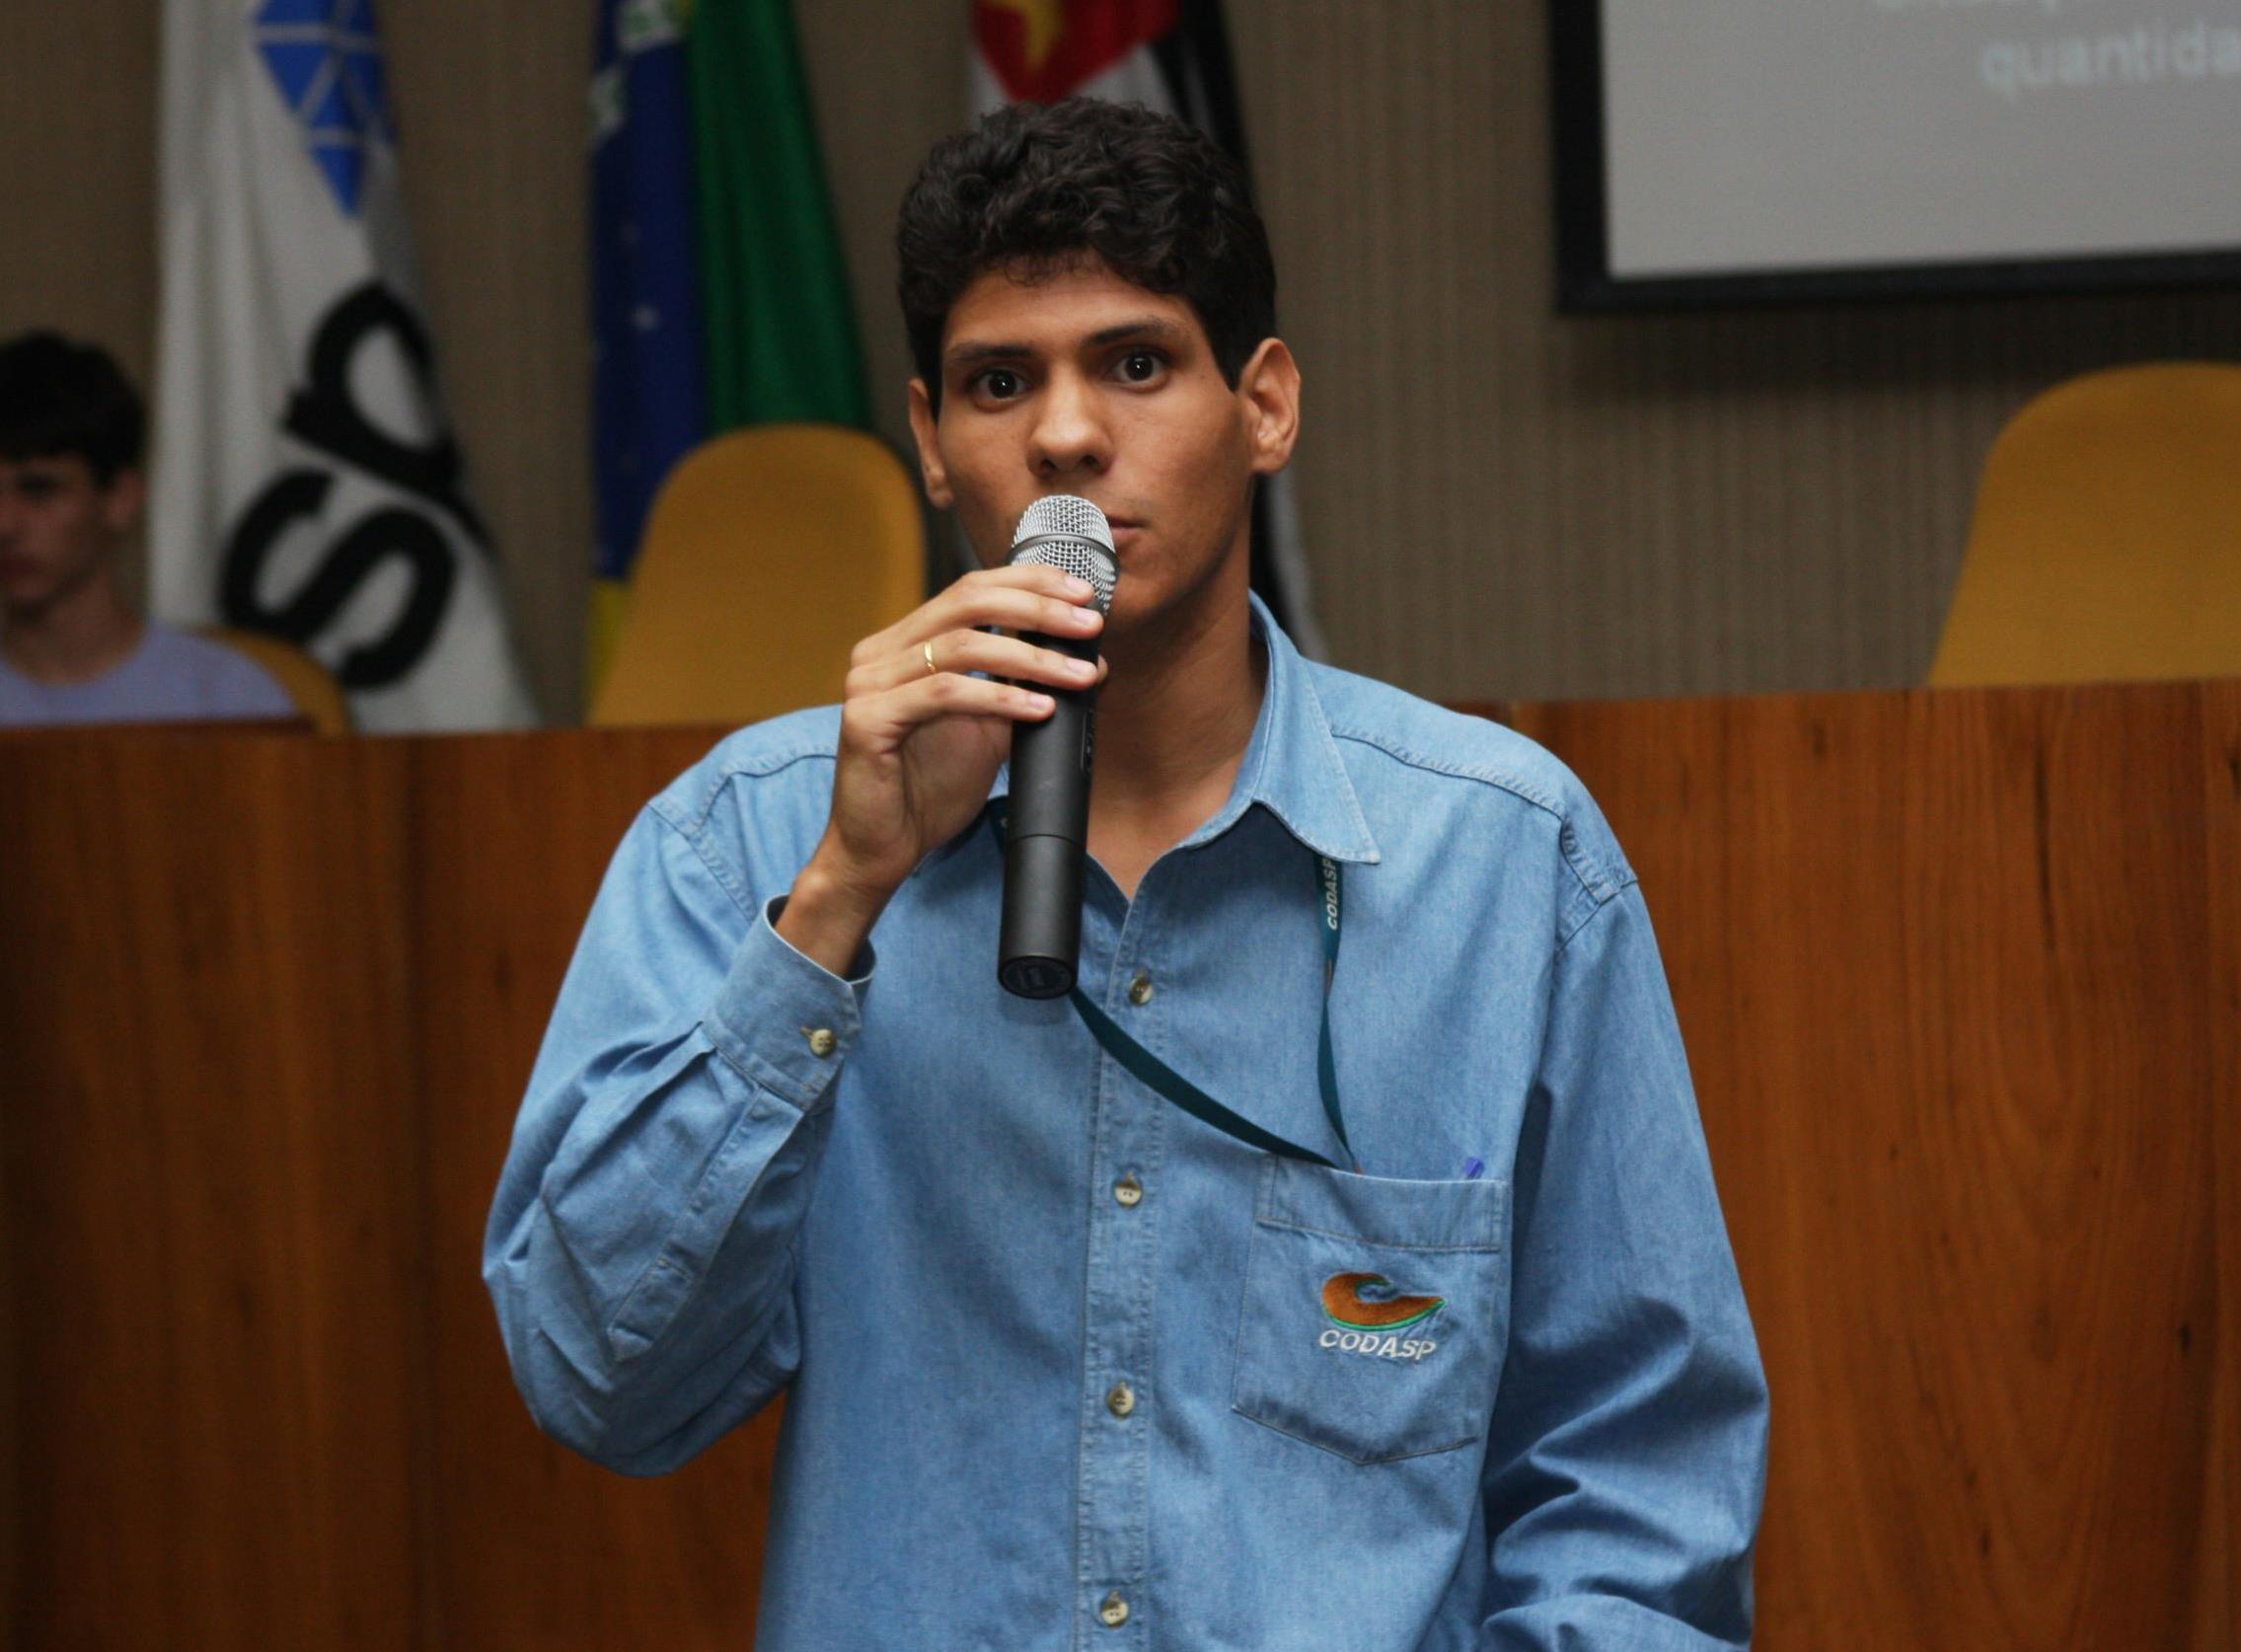  Diego Henriques Santos, engenheiro agrônomo da CODASP - Crédito Arquivo pessoal